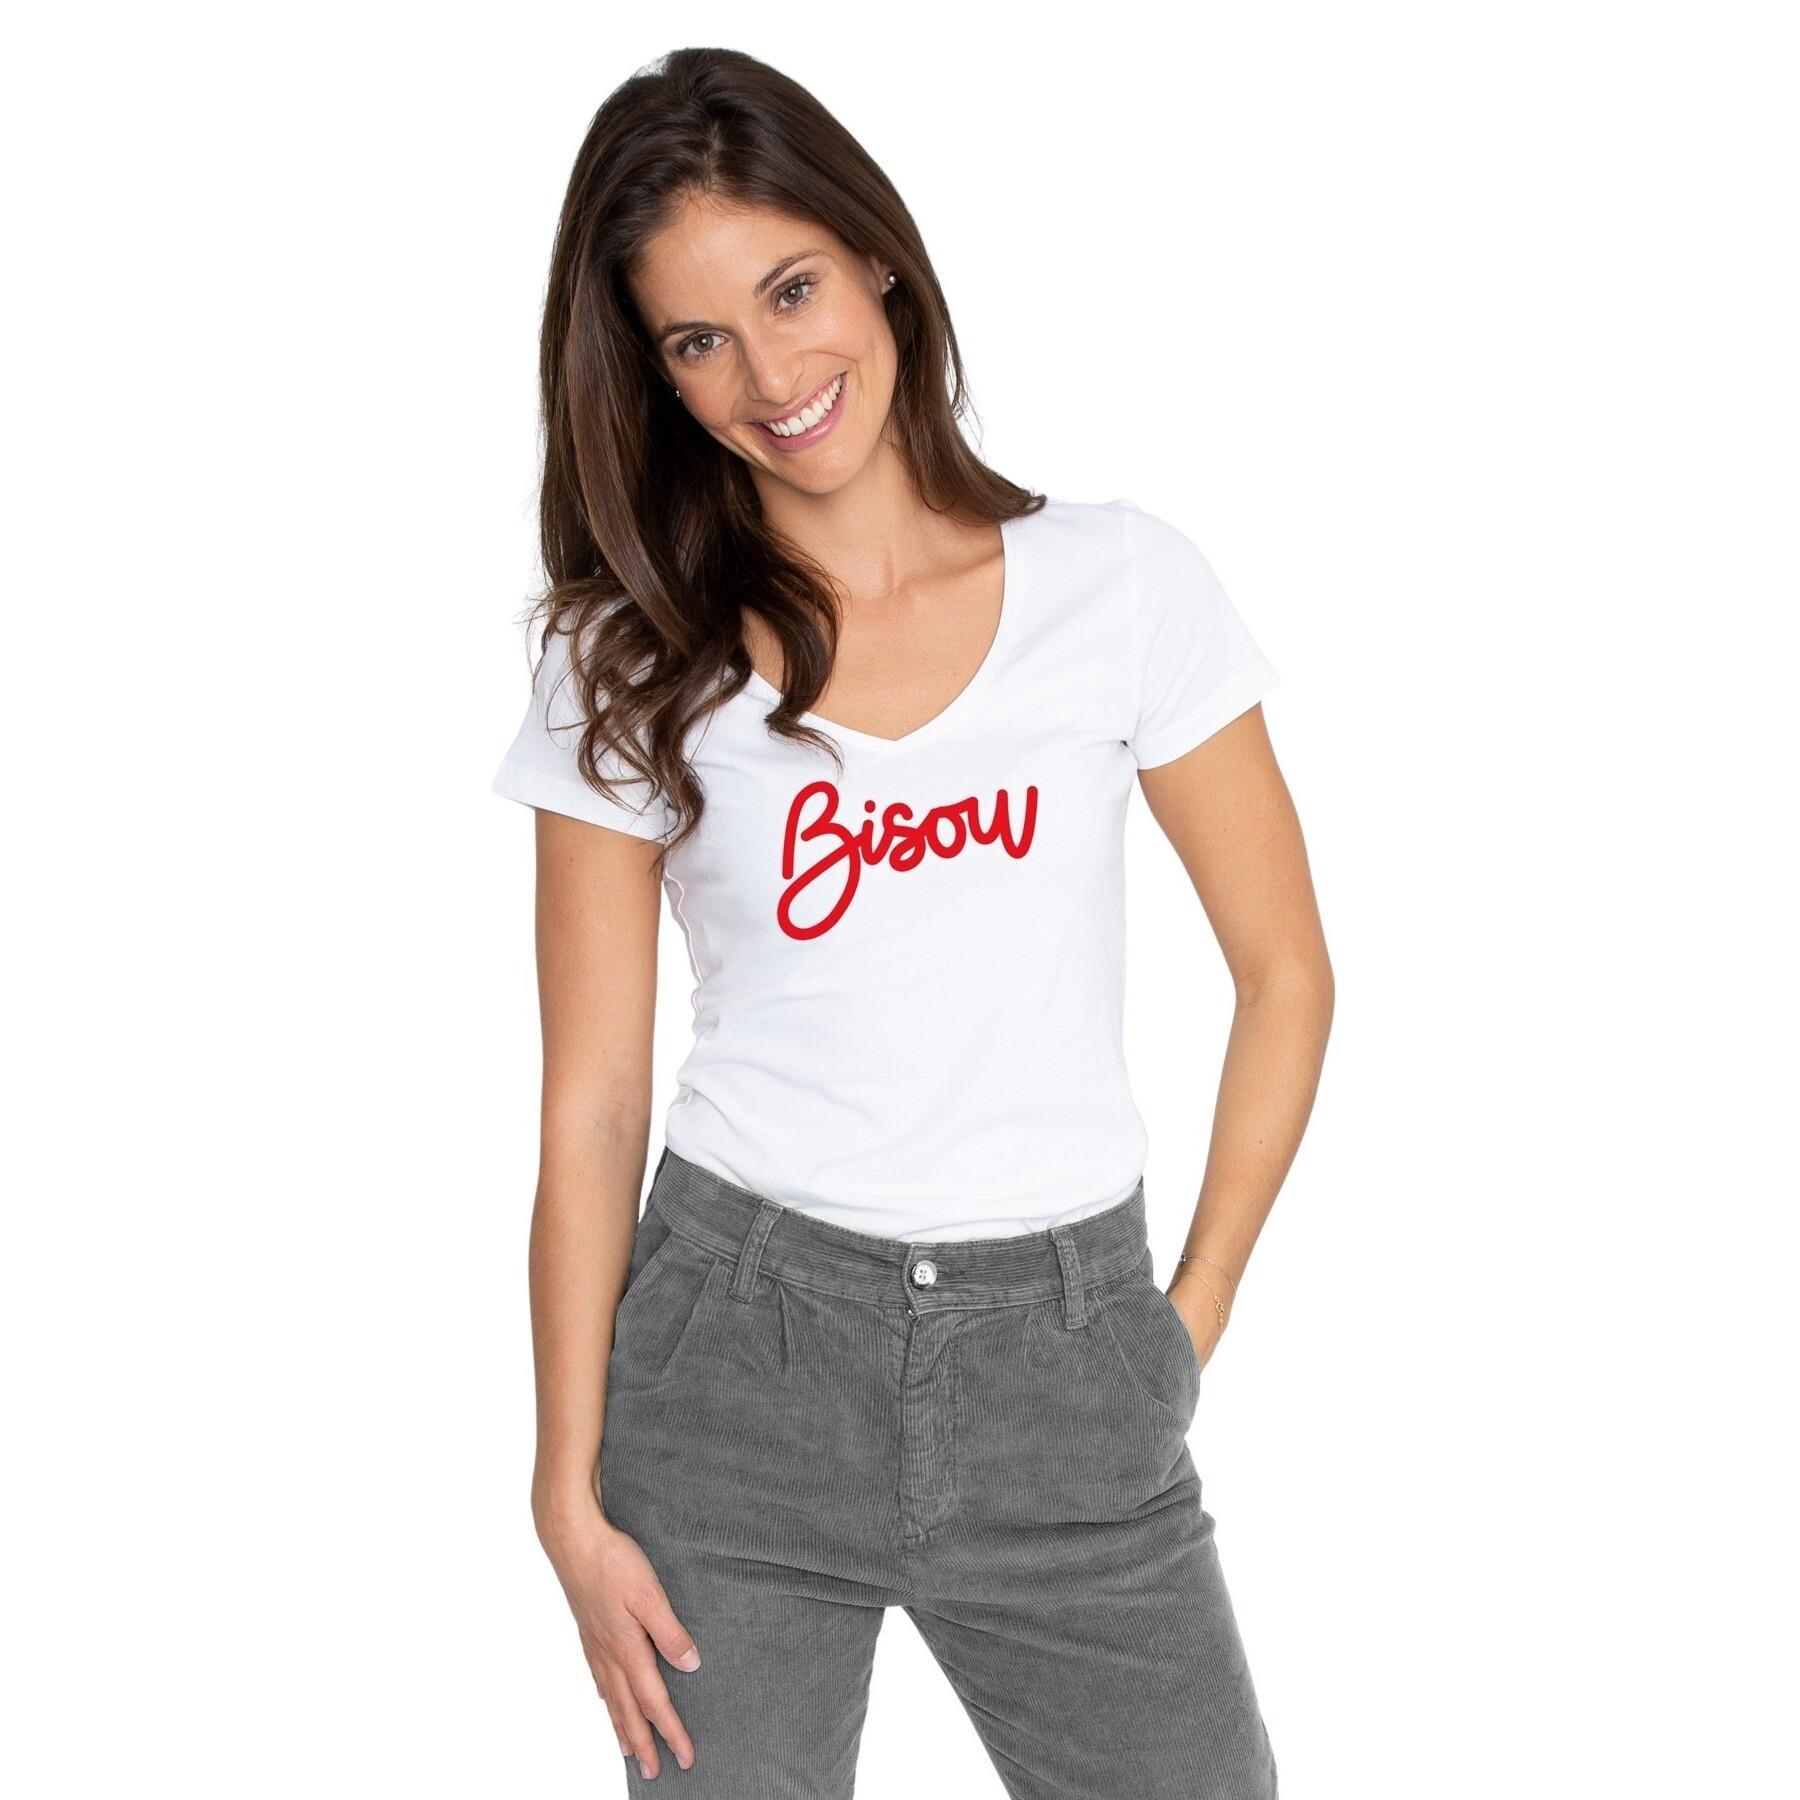 Women's T-shirt French Disorder Bisou